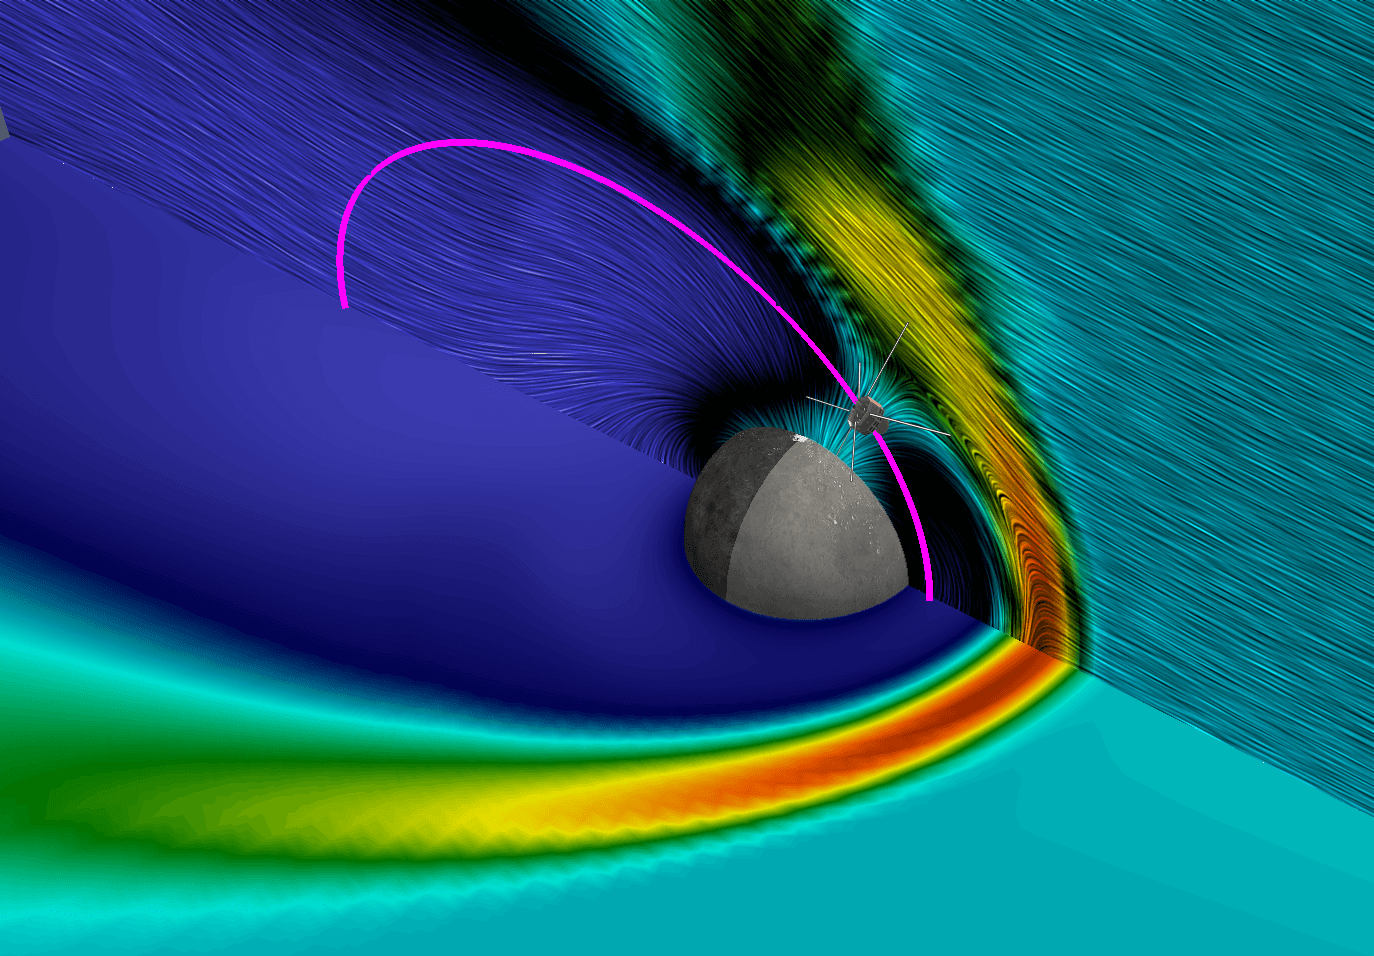 Simulation à l'aphélie de Mercure et orbite de MMO. Crédits Observatoire de Paris